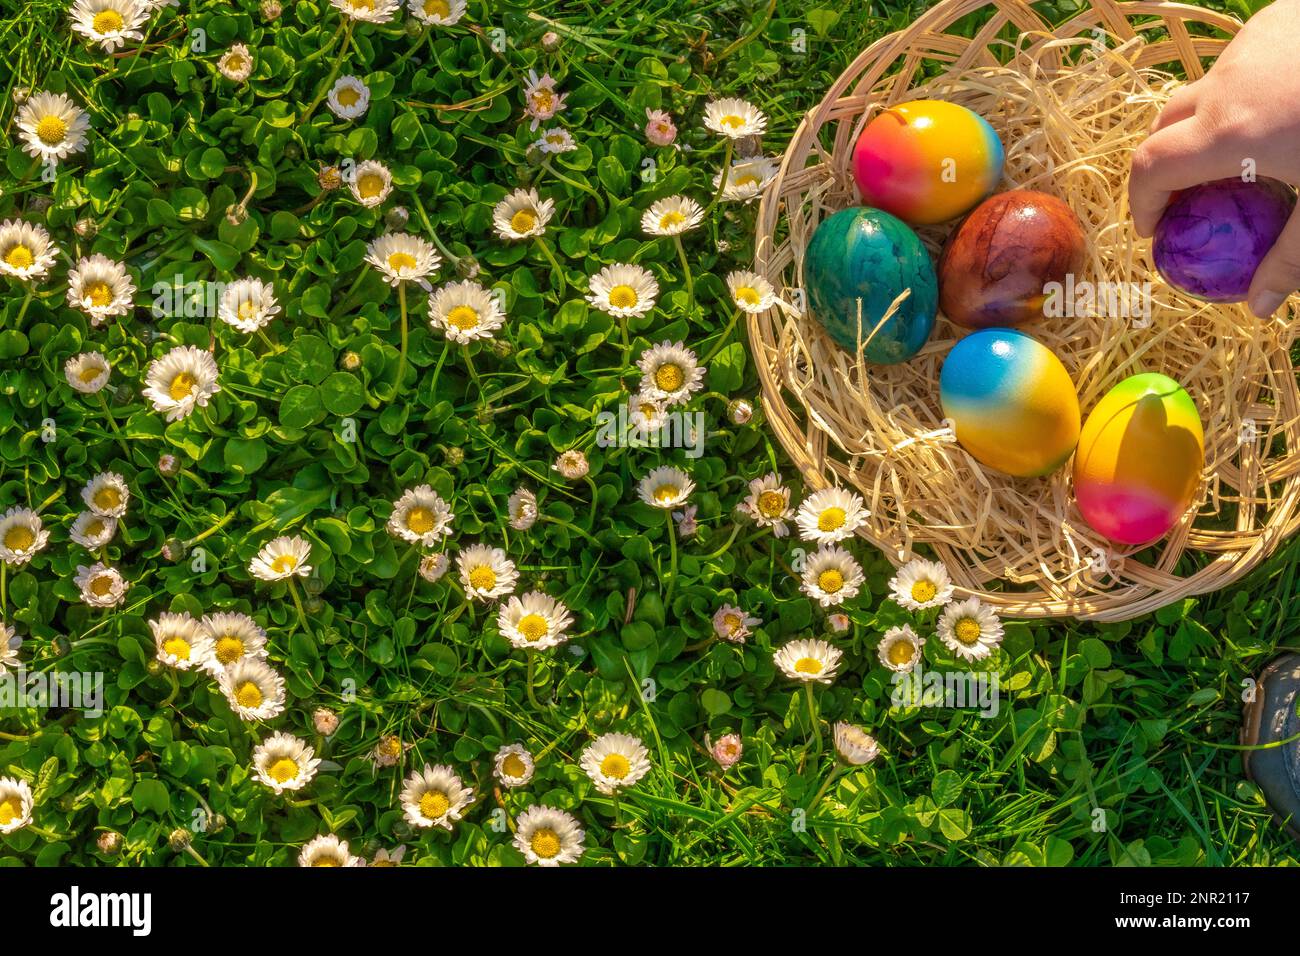 Uovo Hunt.Collection di uova colorate da bambini in un prato con margherite.Pasqua vacanza Tradition.Child raccogliere uova dipinte nel giardino di primavera Foto Stock